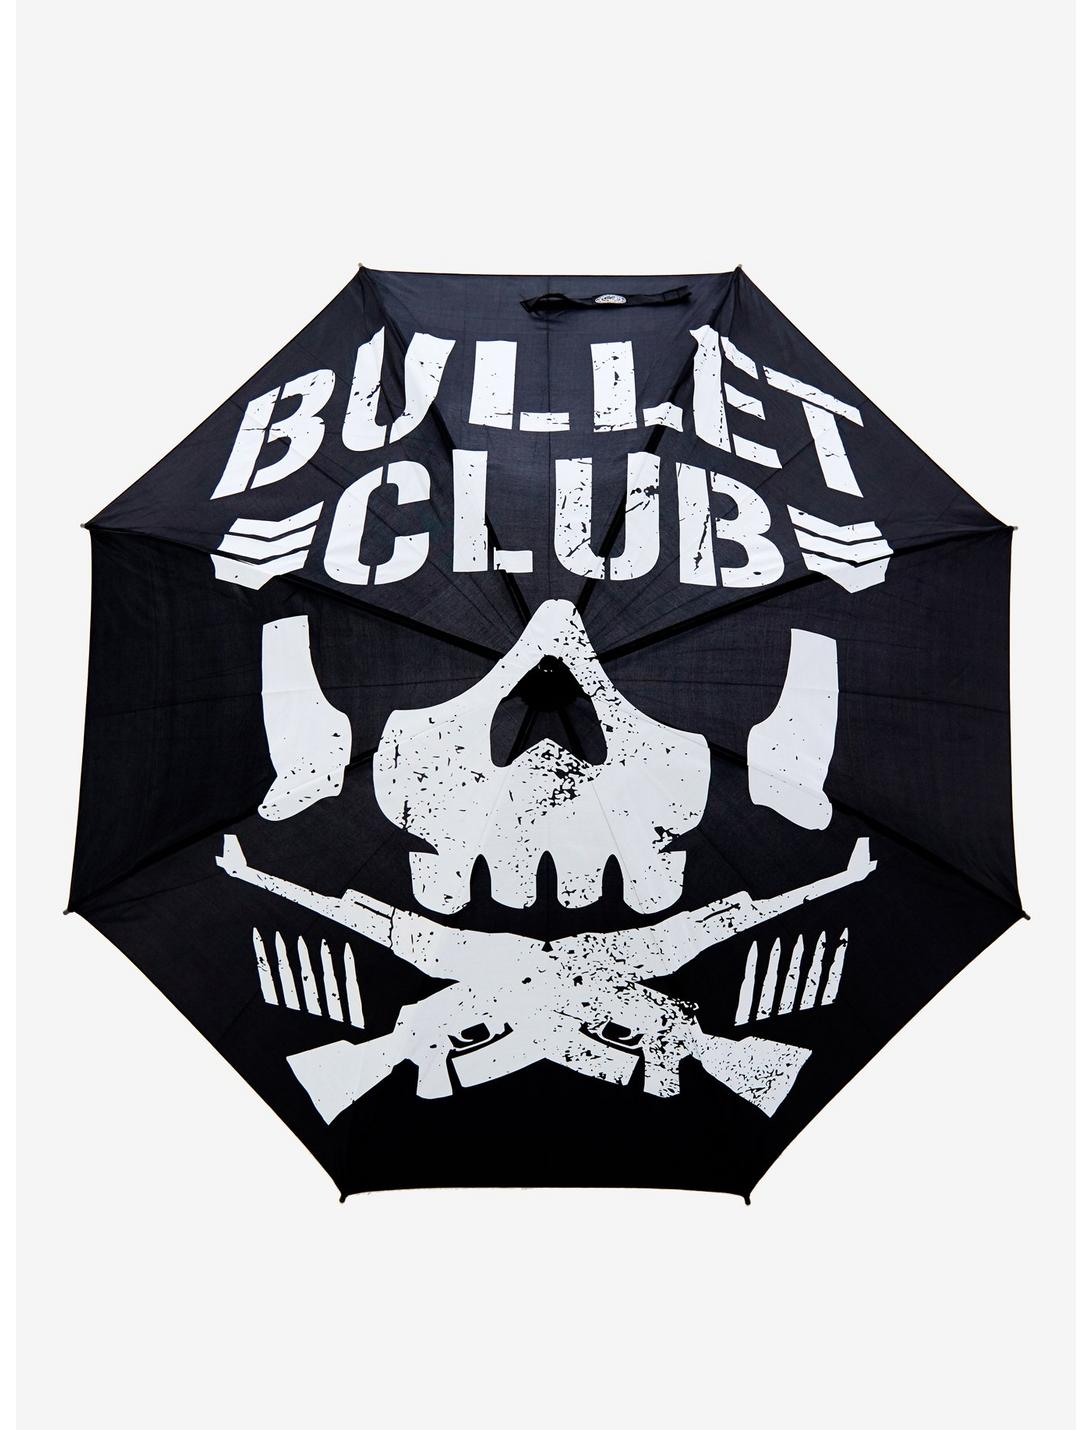 New Japan Pro-Wrestling Bullet Club Logo Stick Umbrella, , hi-res